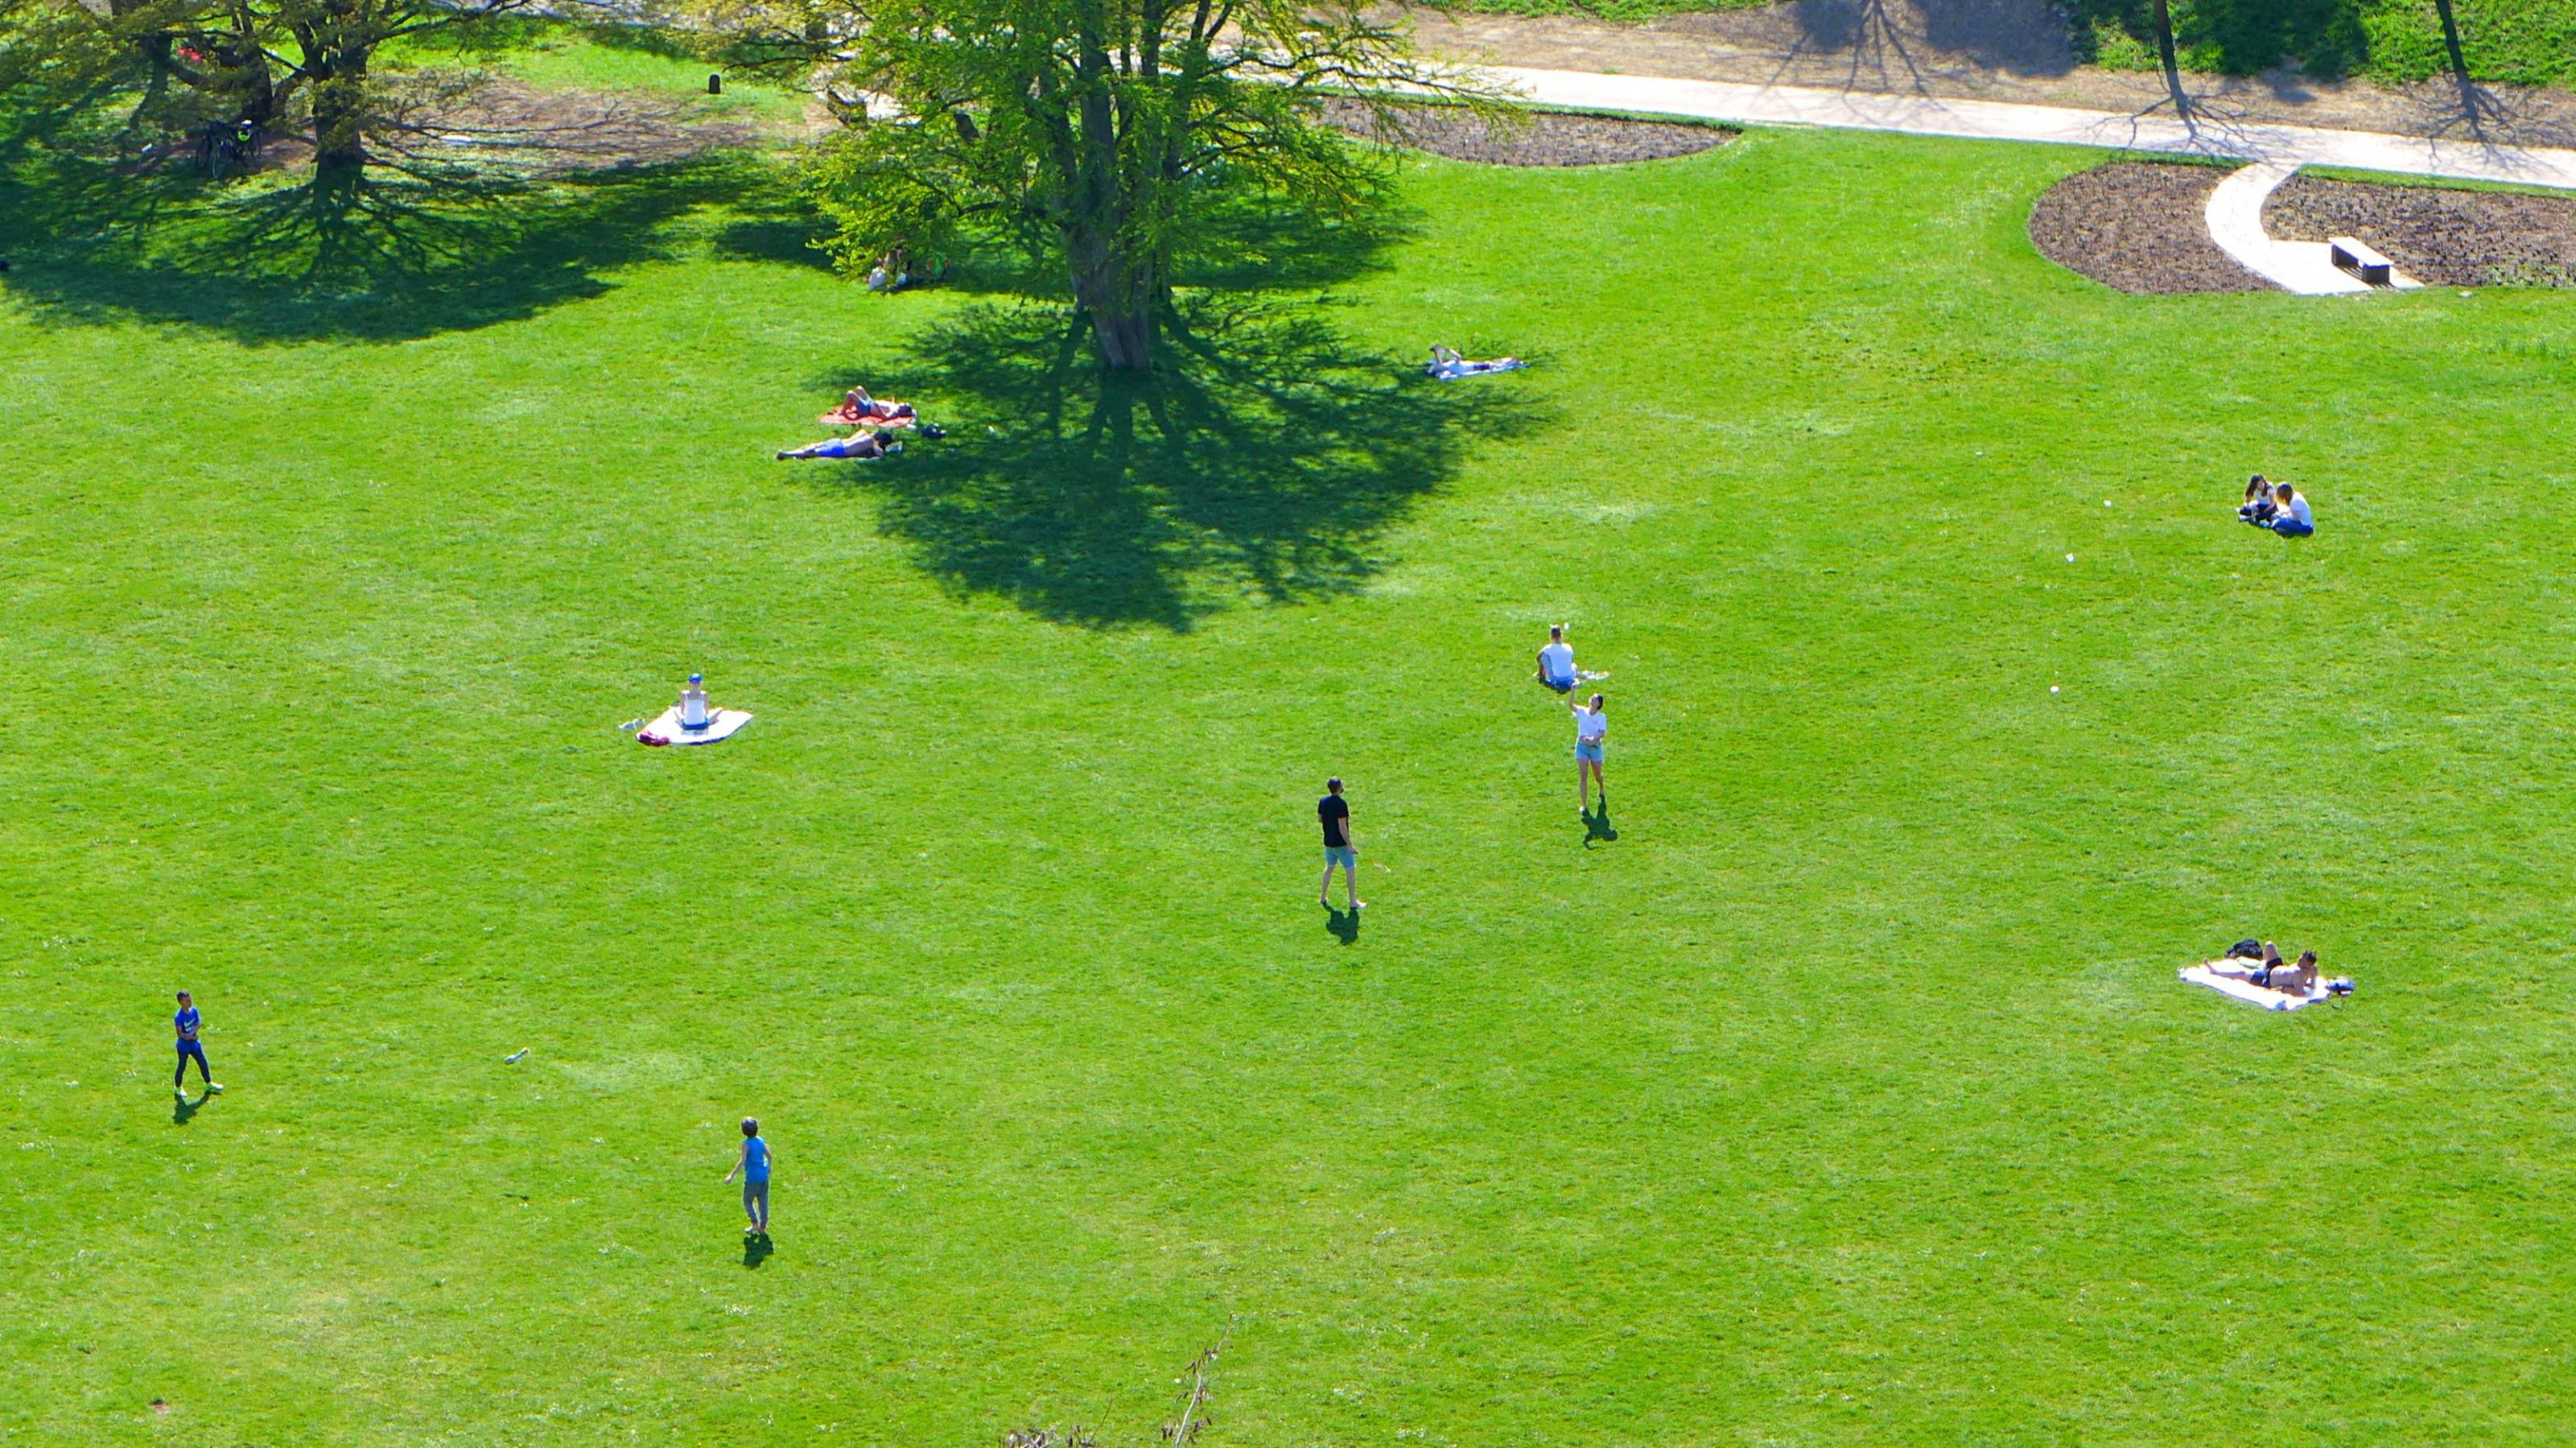 Bei sonnigem Wetter zieht es viele Menschen in die Parks, wie hier in Stuttgart. Doch sie halten Abstand zueinander.